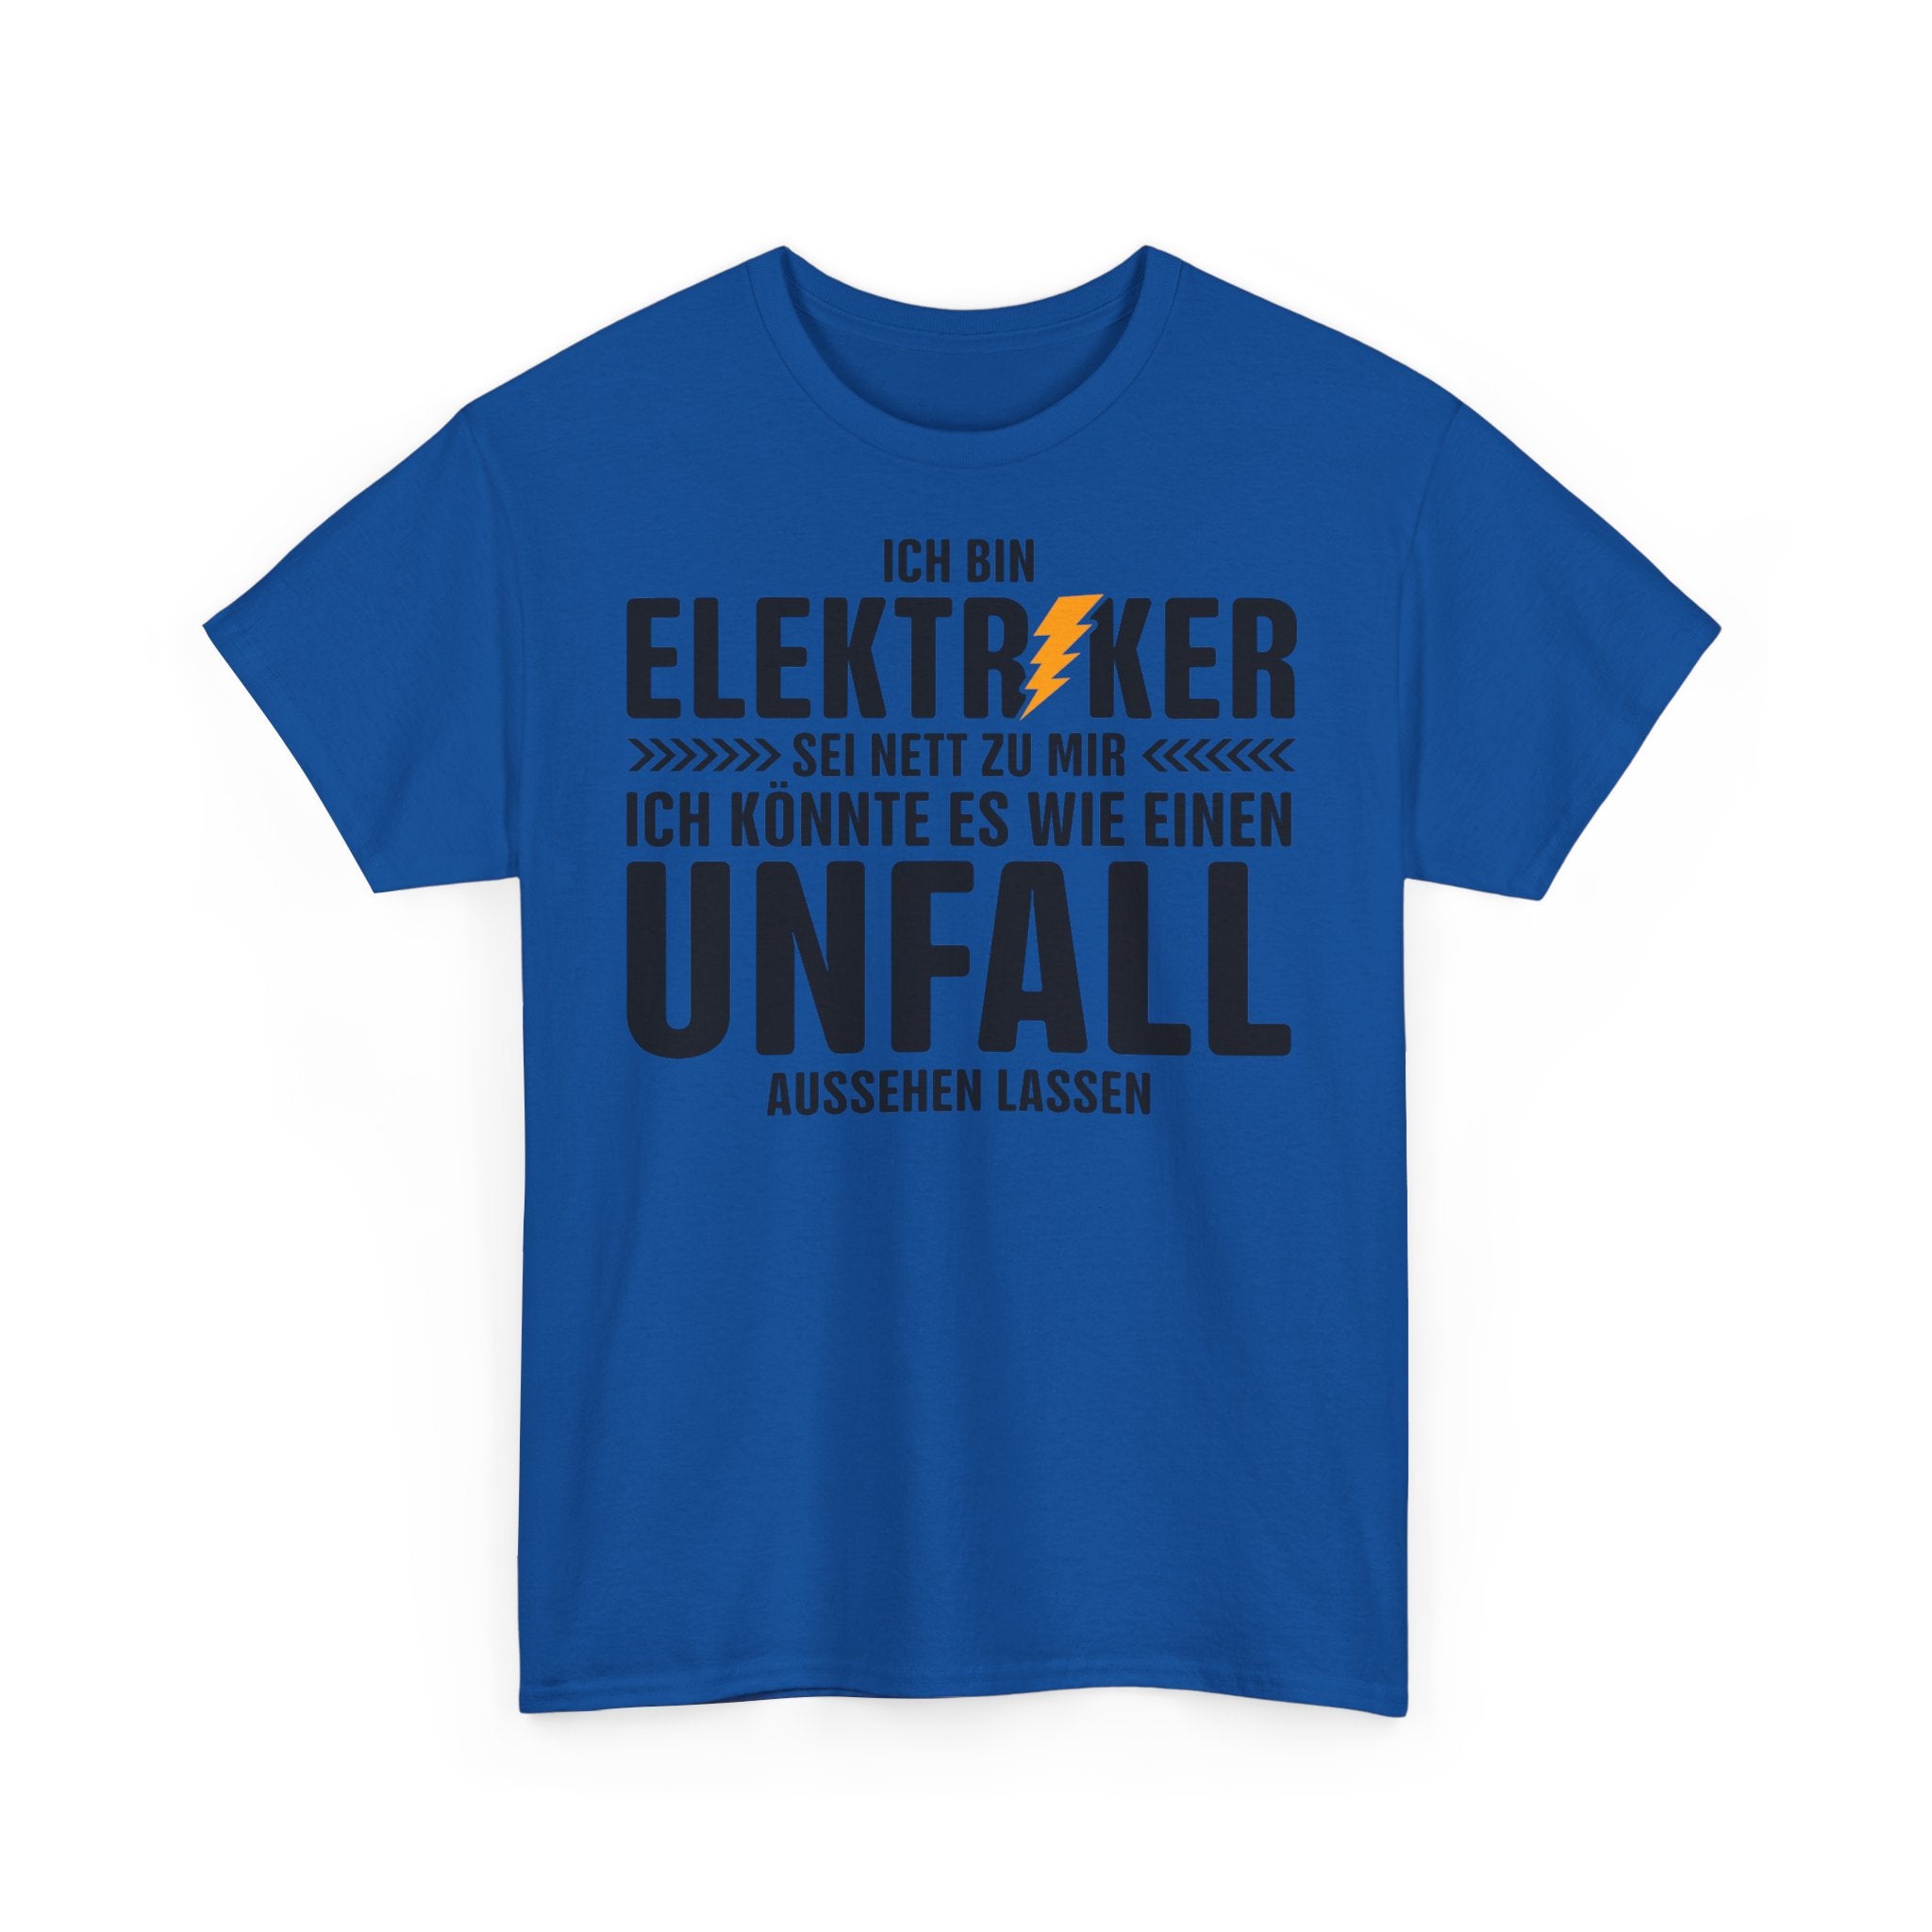 Bin Elektriker - Könnte es wie einen Unfall aussehen lassen - Witziges Geschenk für Elektriker - Unisex T-Shirt